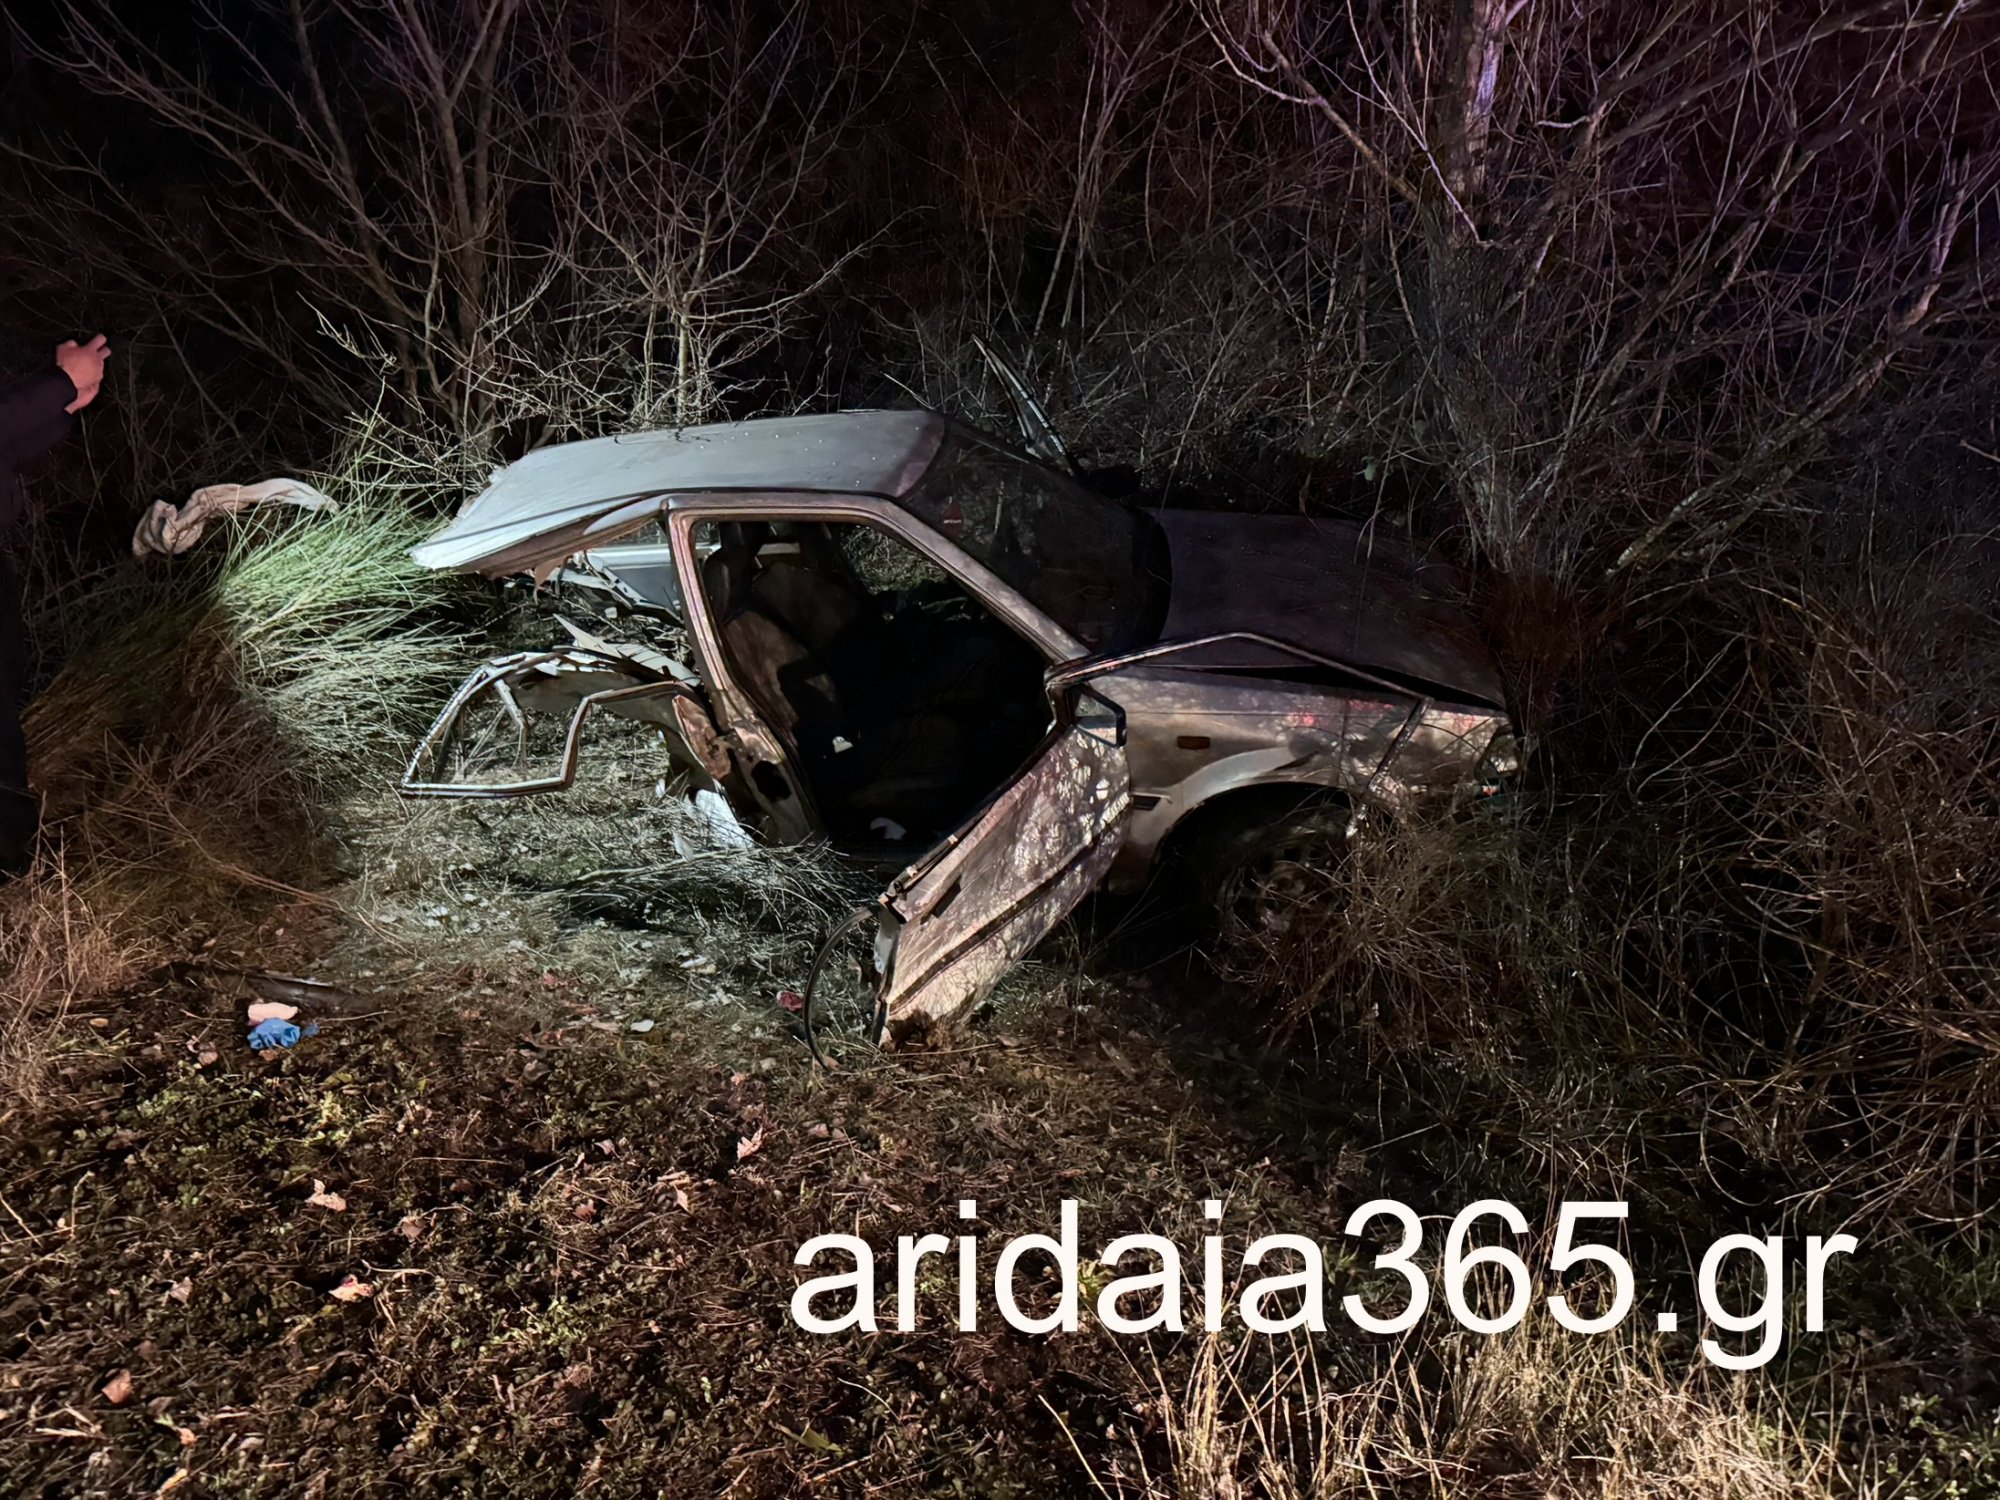 Αυτοκίνητο κόπηκε στη μέση στην Πέλλα - Εικόνες από το σοβαρό τροχαίο